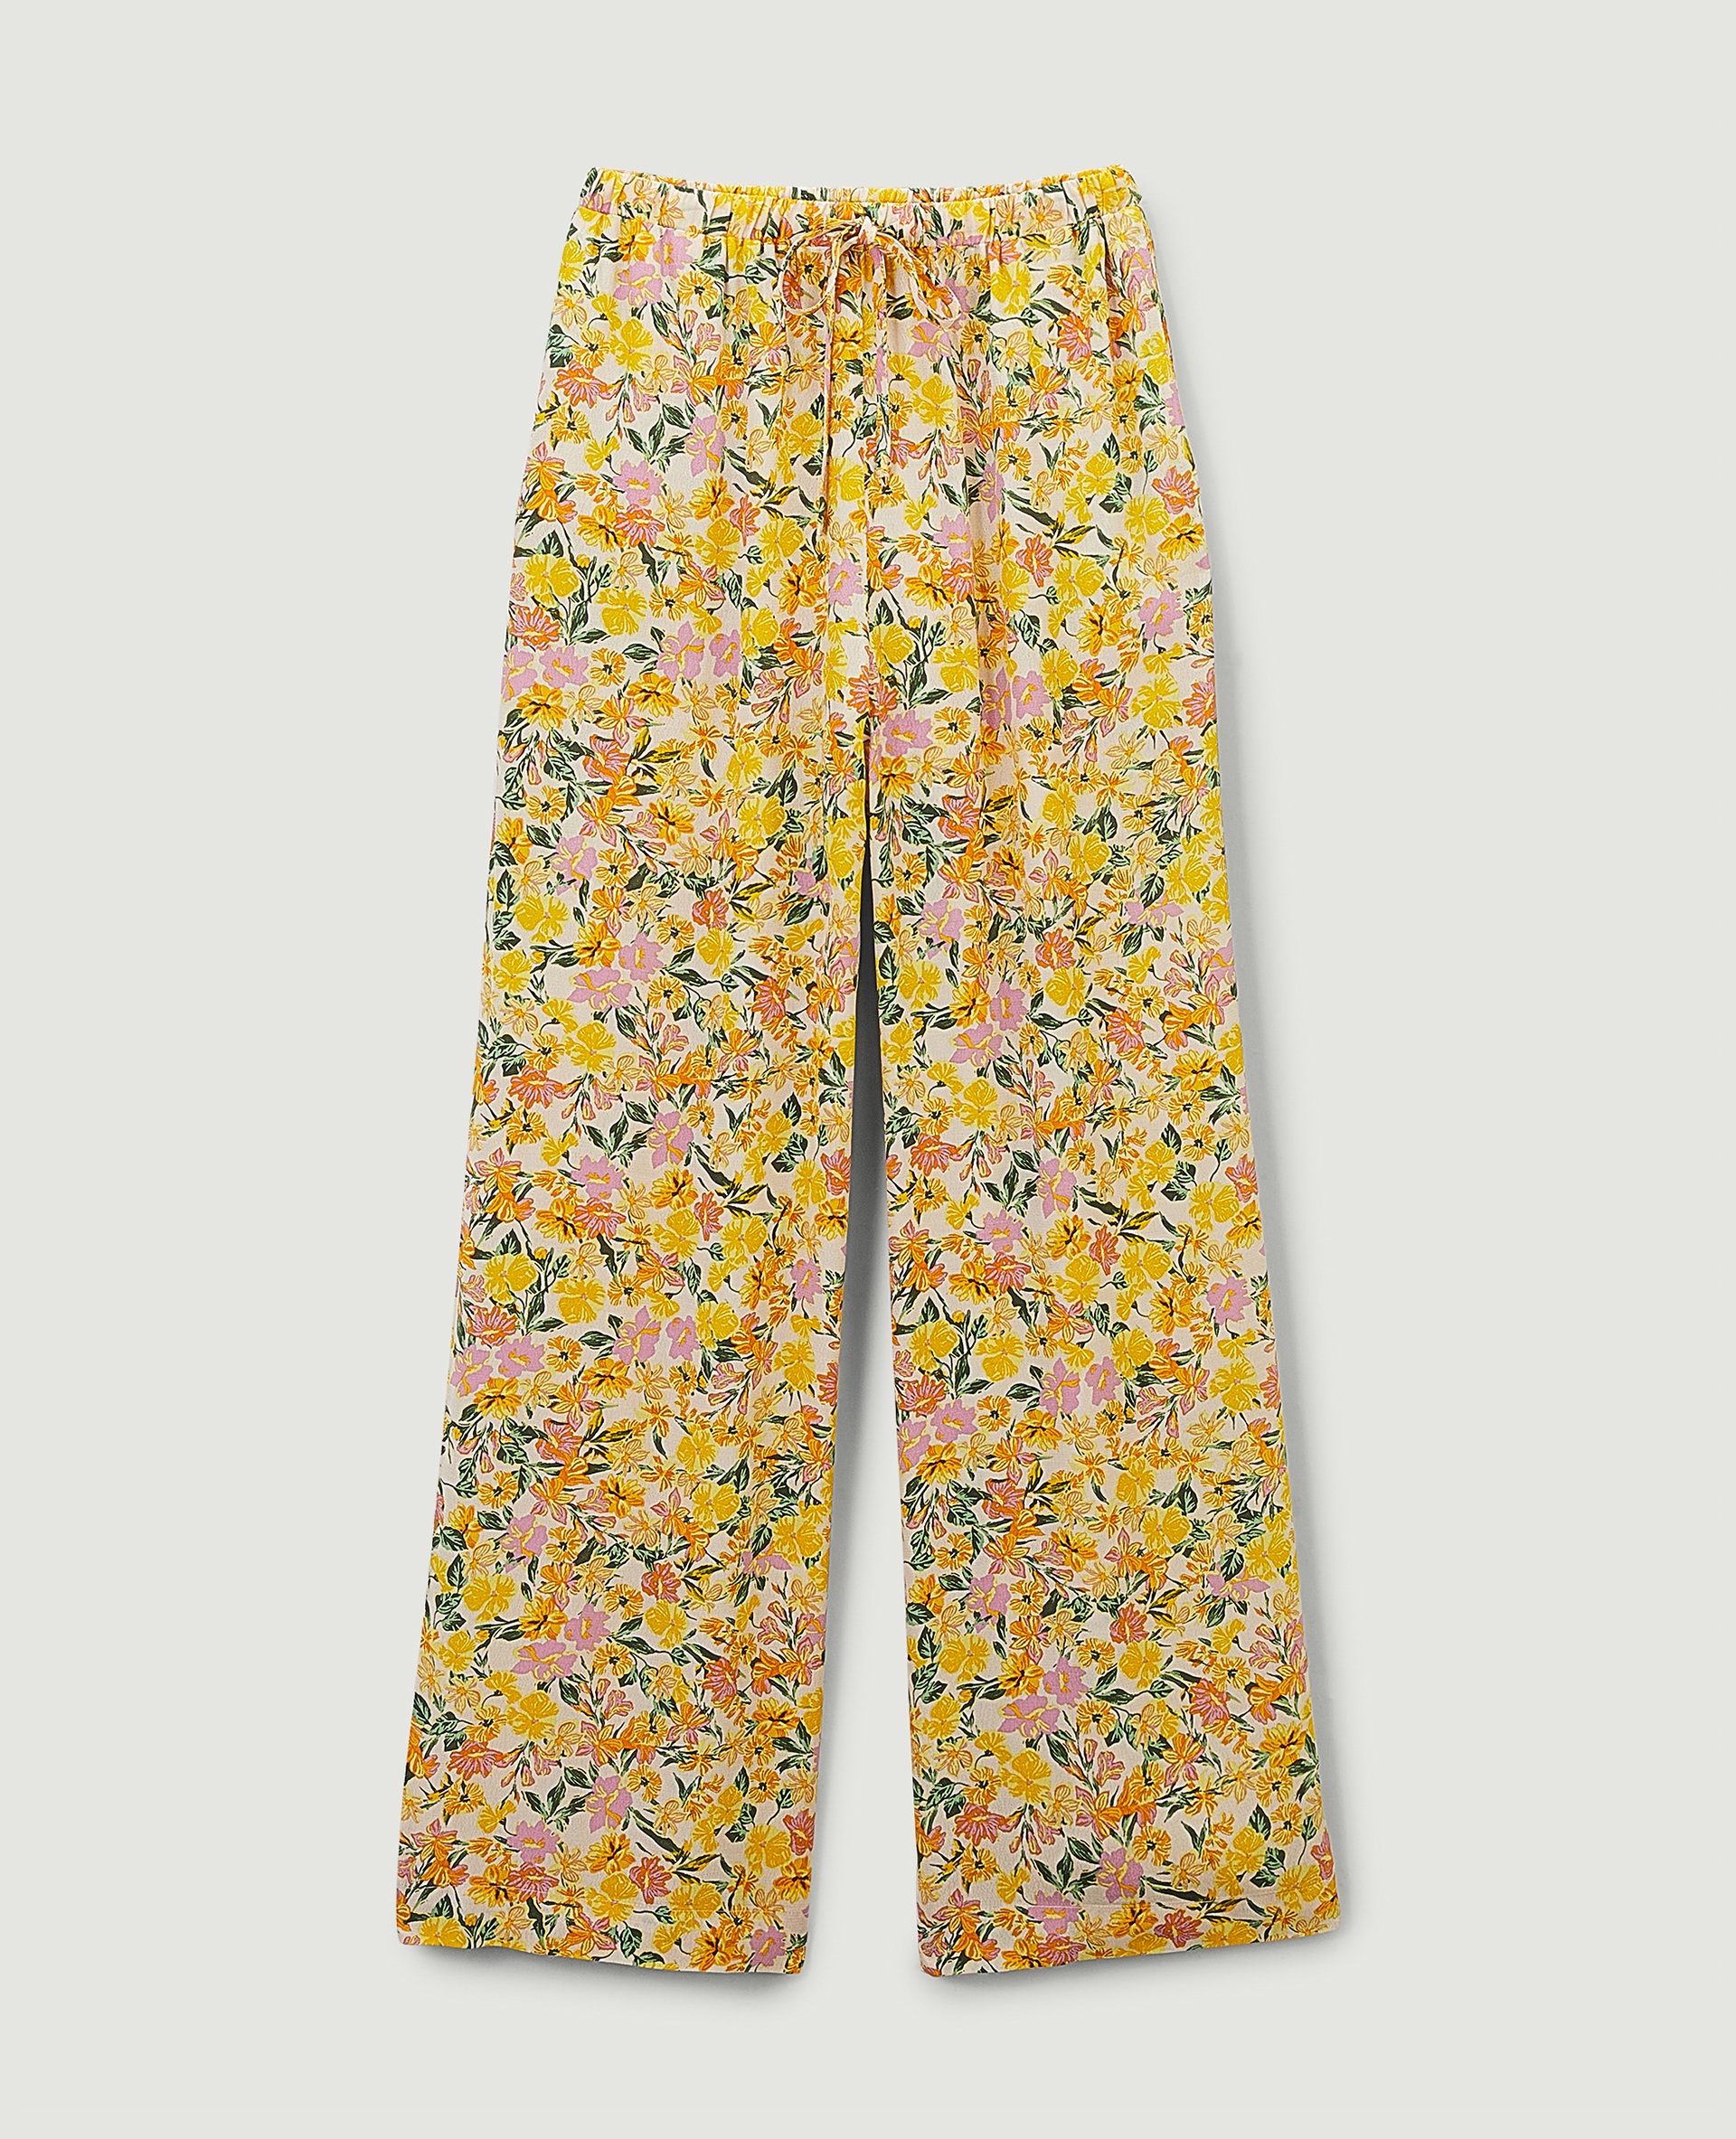 Pantalon fluide à motif fleurs jaune - Pimkie